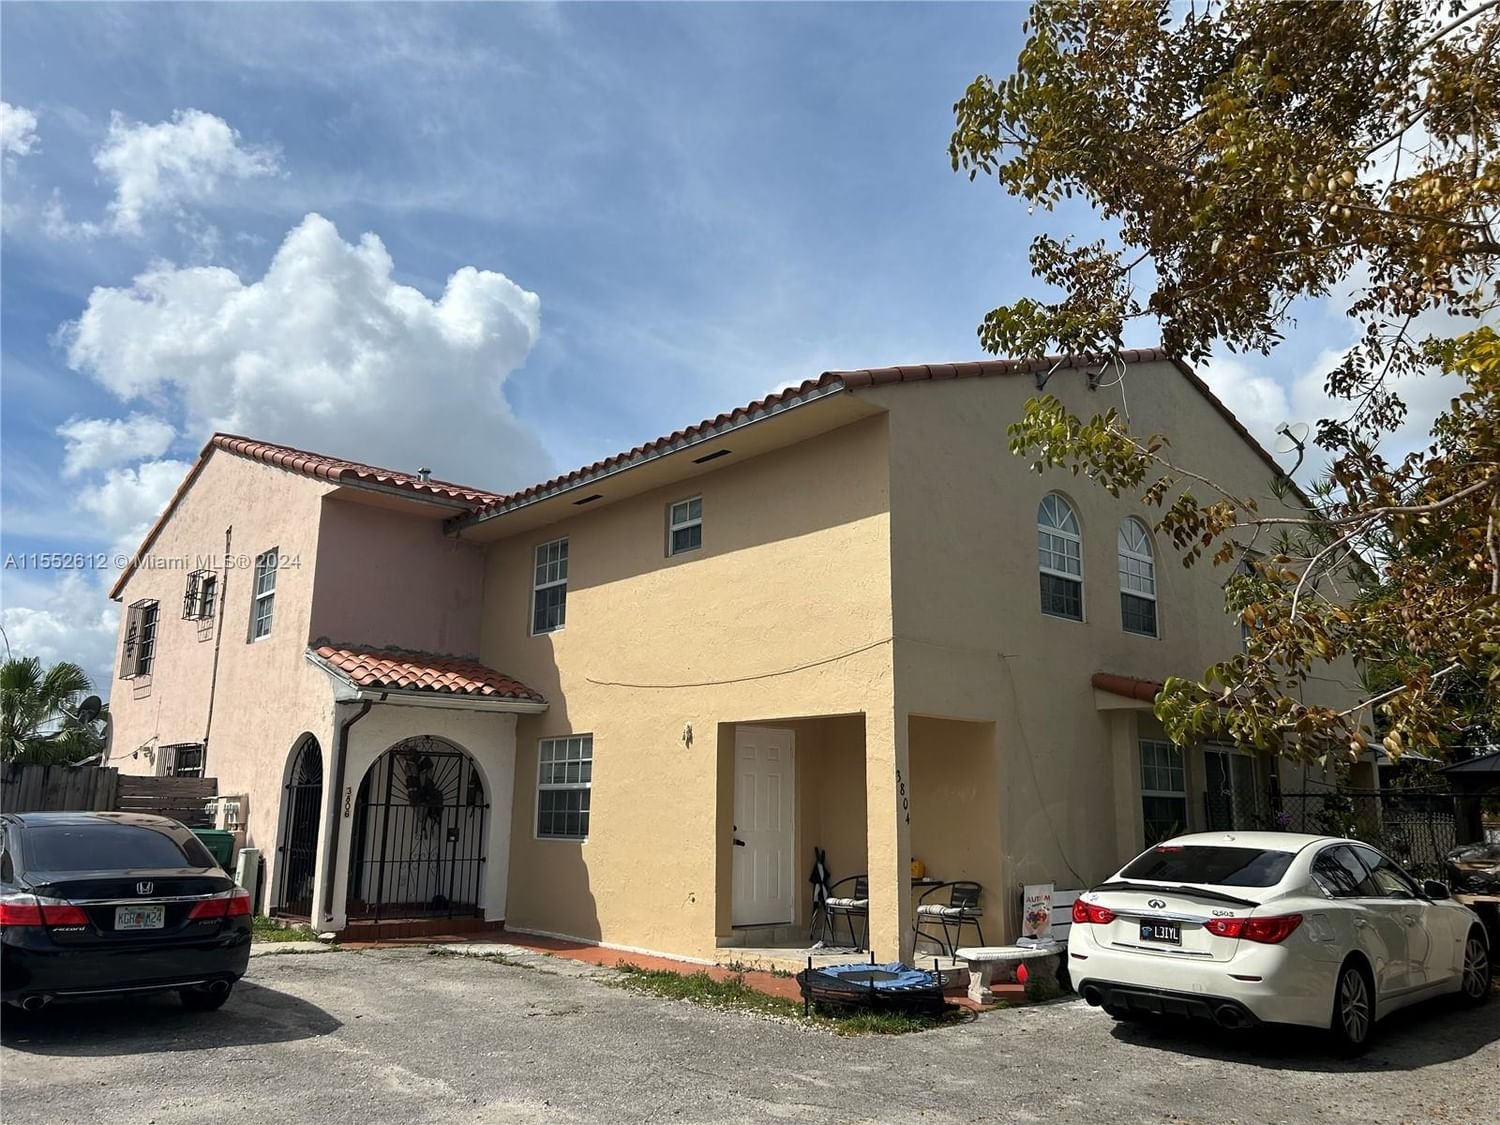 Real estate property located at 3806 84th Ave #17-E, Miami-Dade County, ALTAMIRA GARDENS CONDO, Miami, FL